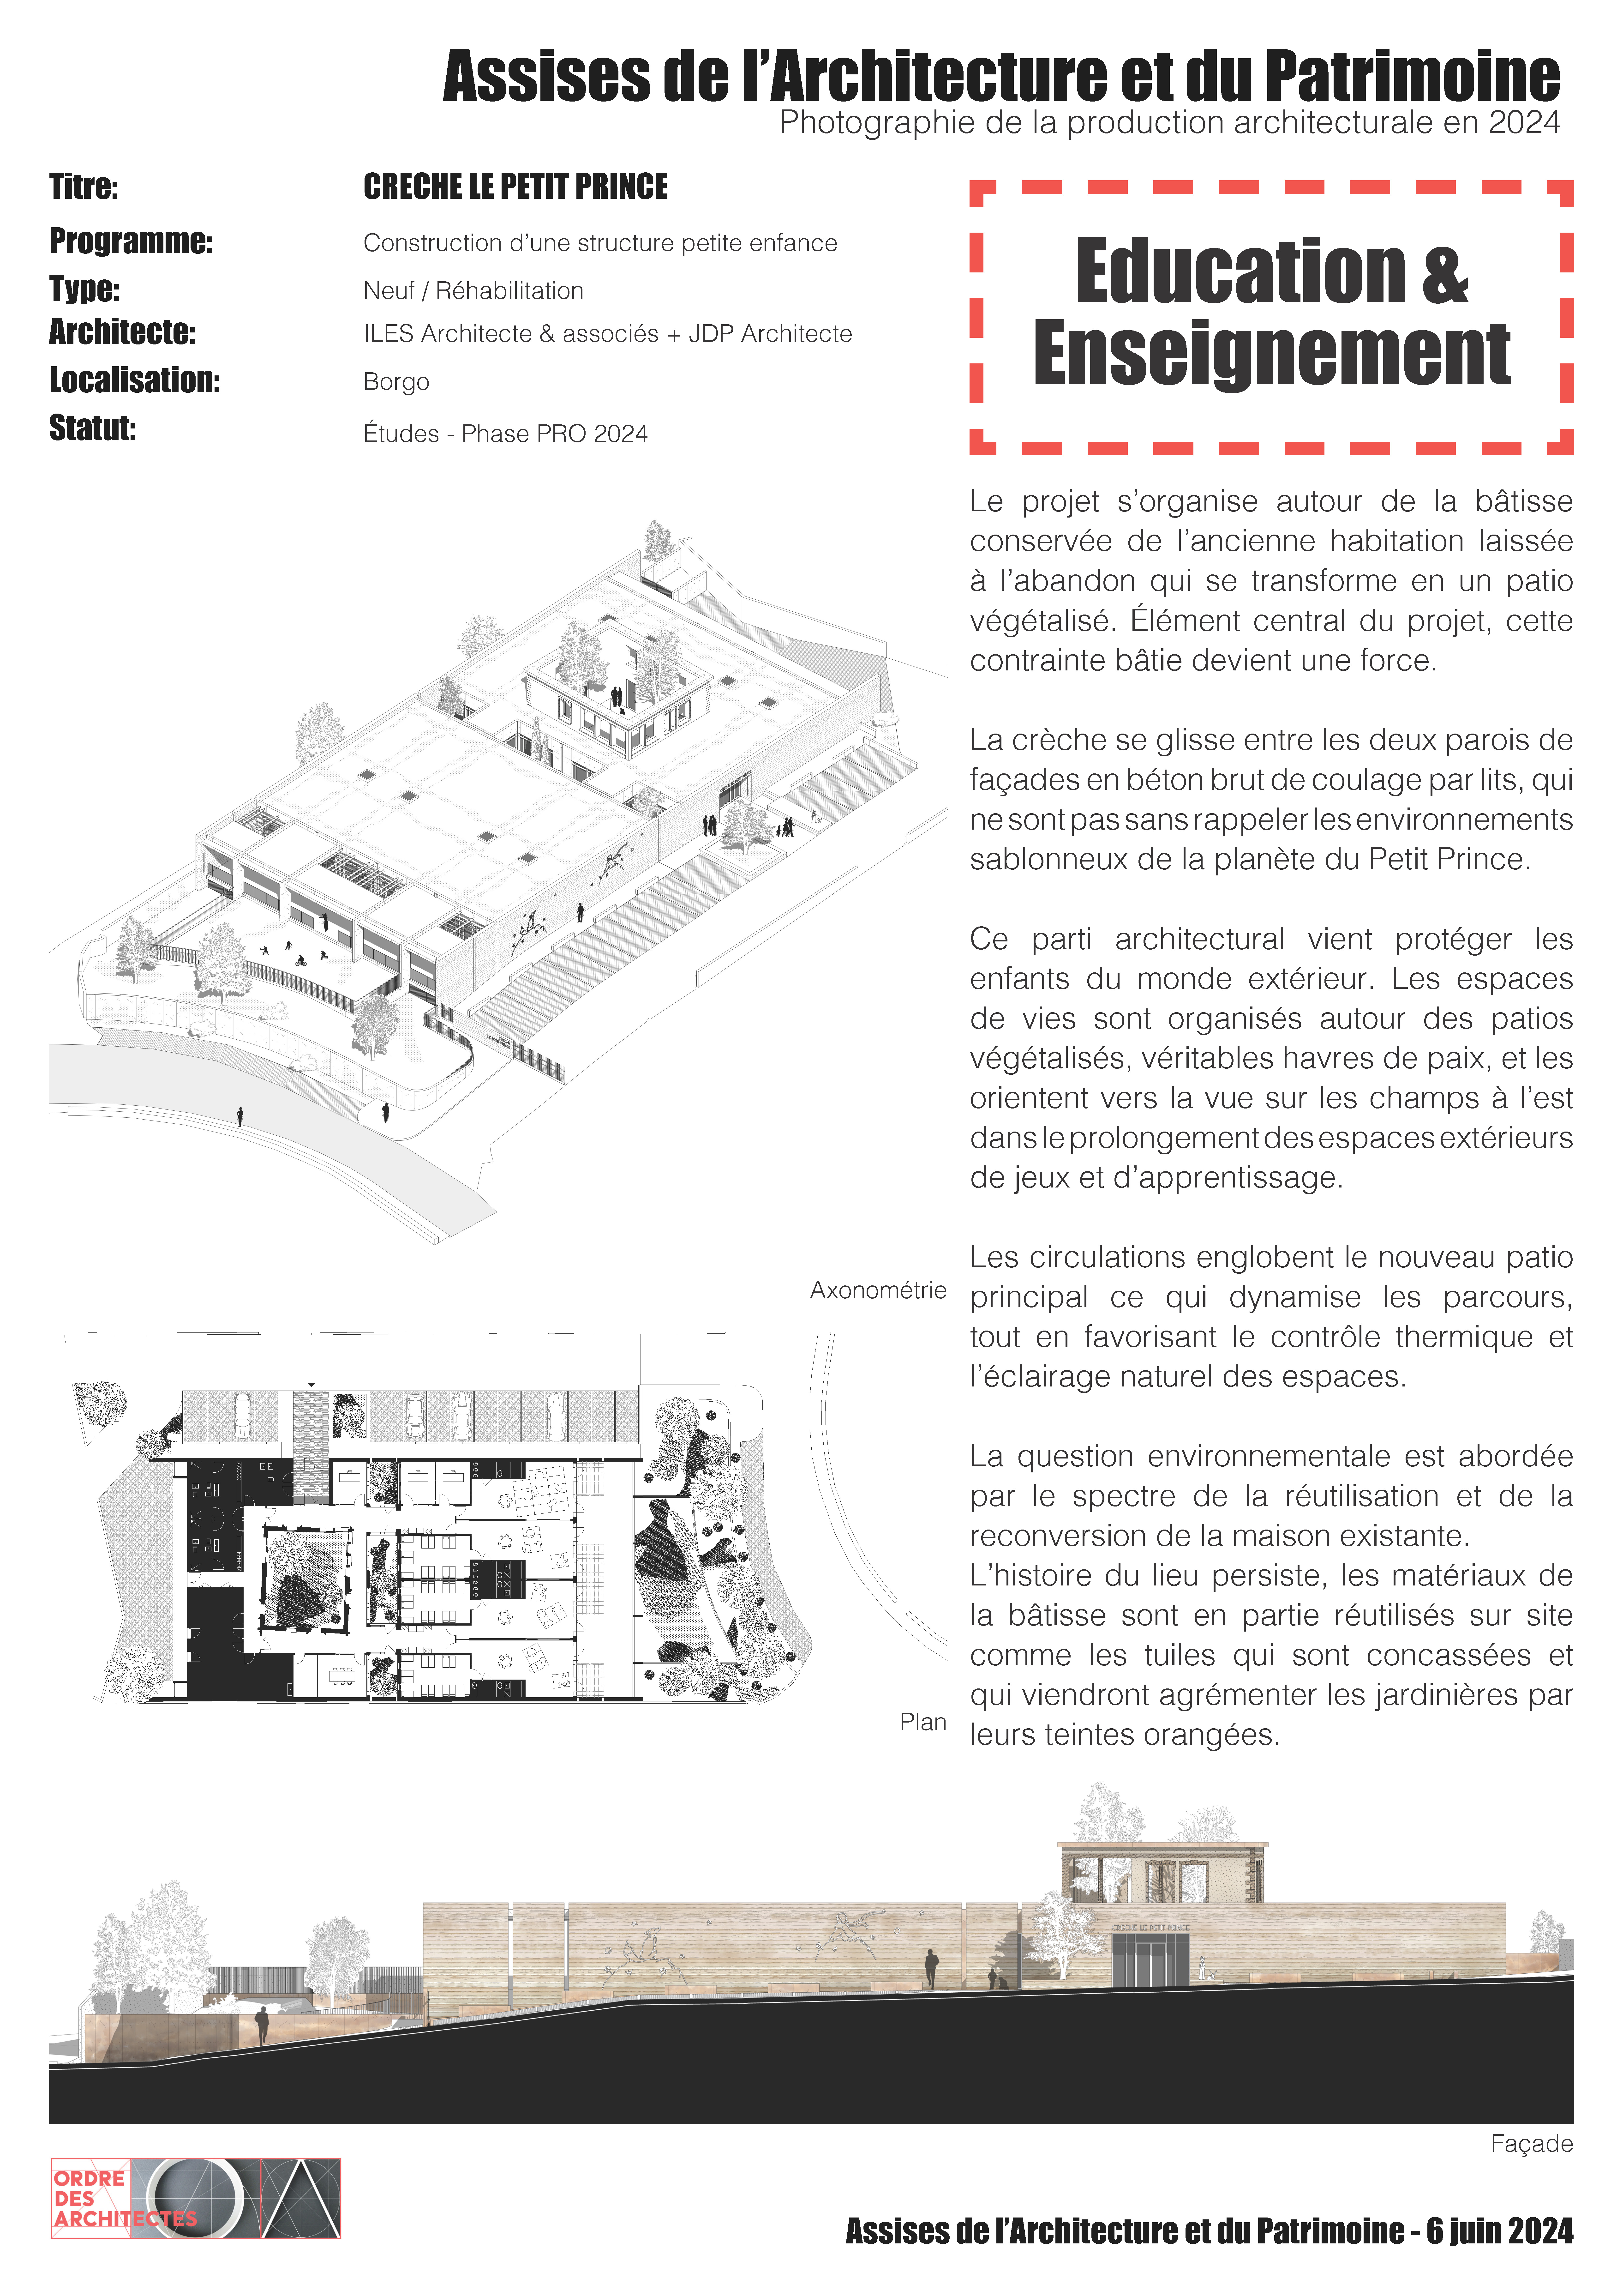 Crèche Le Petit Prince - ILES Architecte & associés + JDP Architecte - Borgo